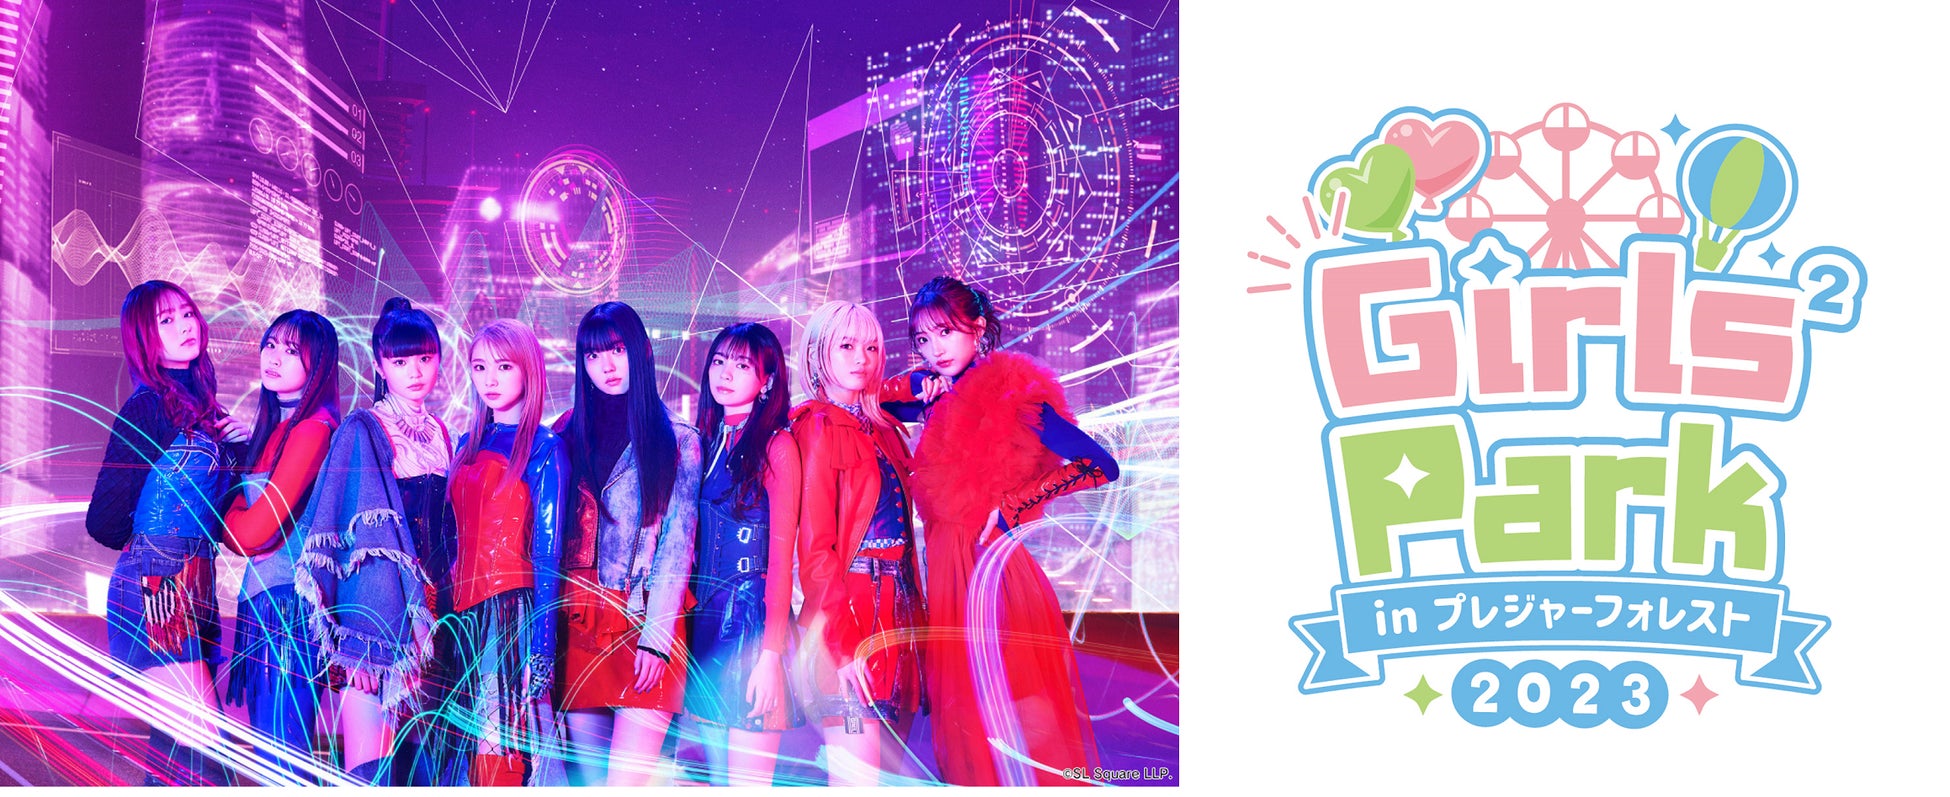 「Girls² Park 2023 in プレジャーフォレスト」4/29(土)～6/25(日)開催のサブ画像1